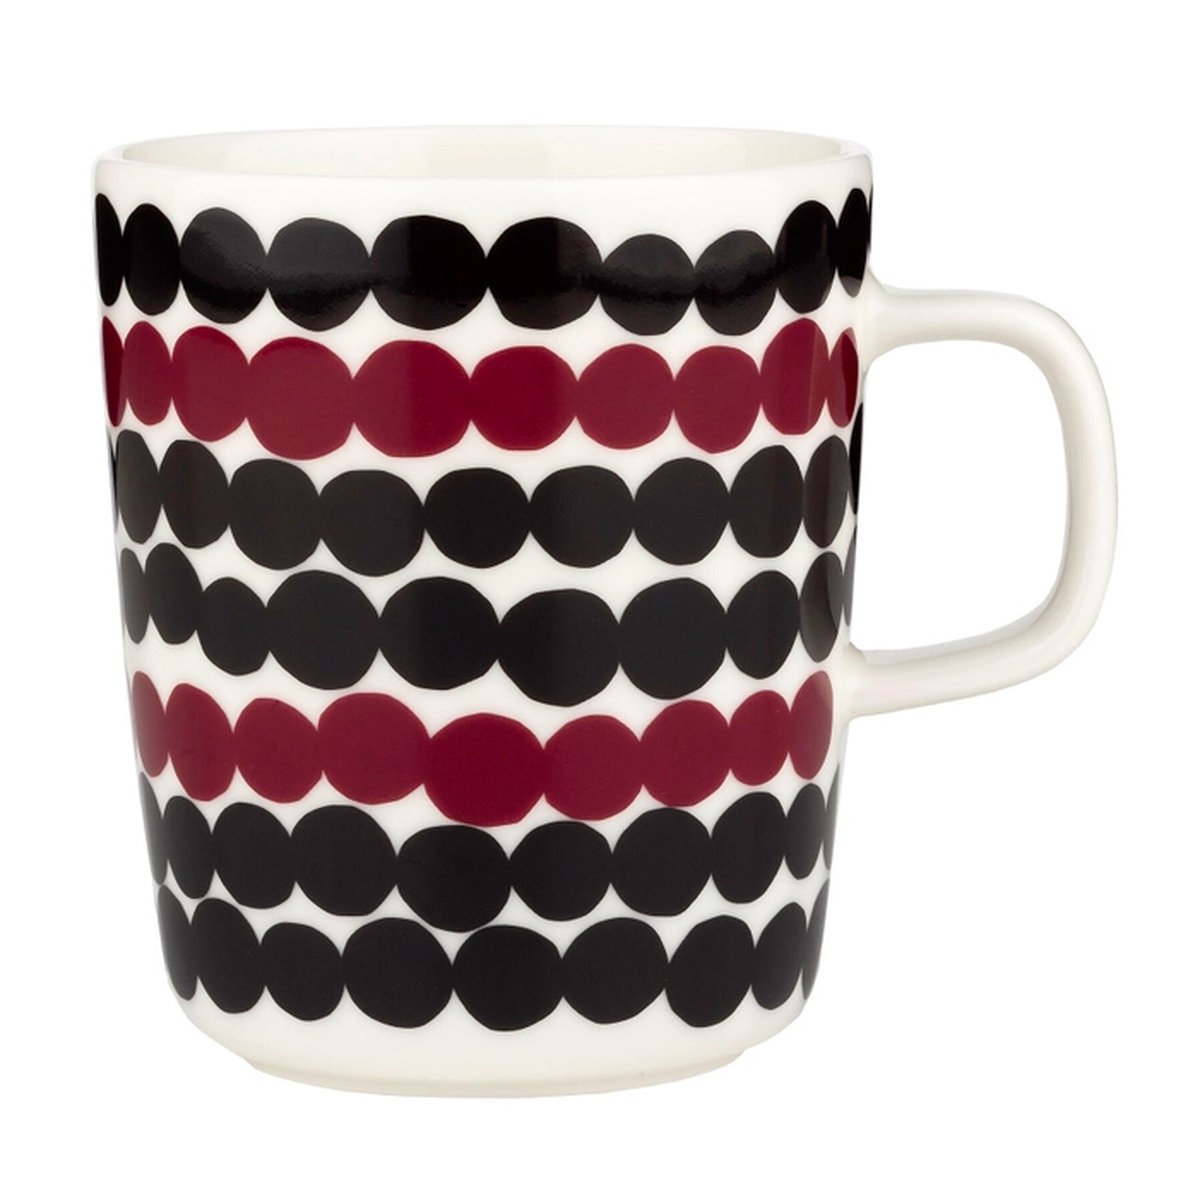 Marimekko Oiva - Siirtolapuutarha Räsymatto mug 2,5 dl, rosewood - black |  Pre-used design | Franckly